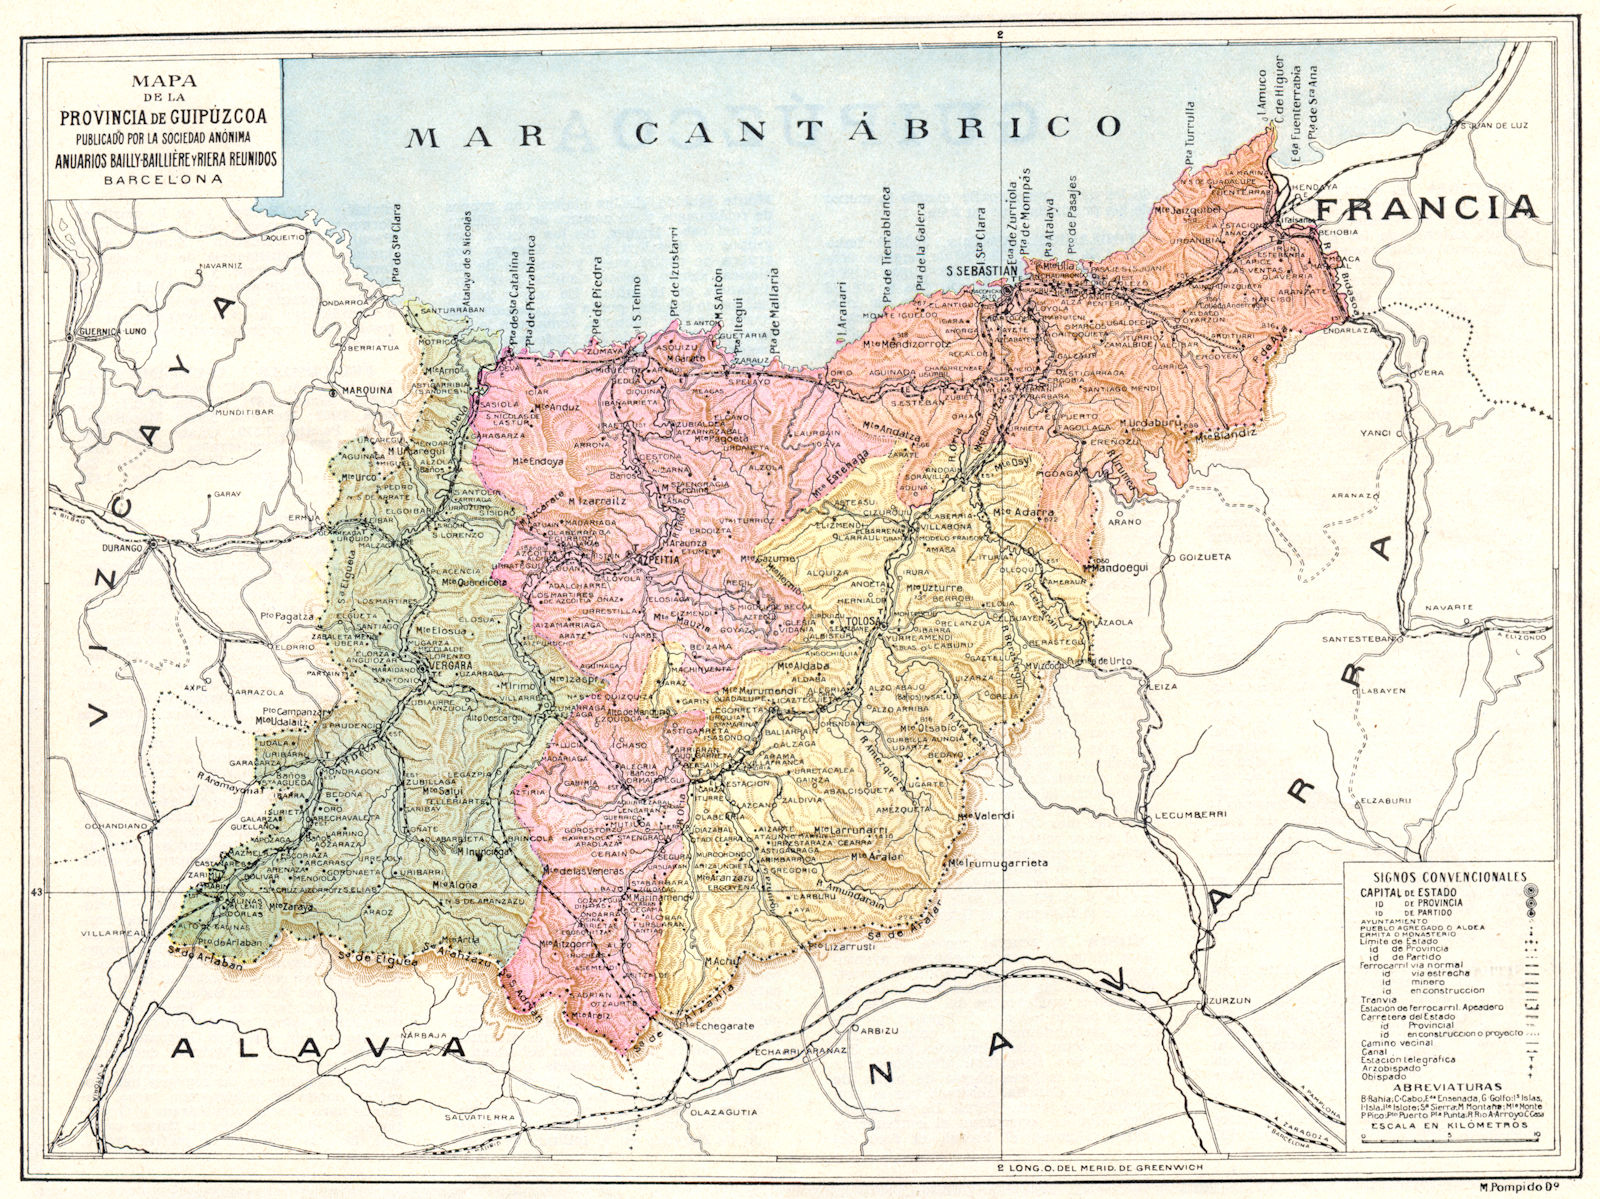 SPAIN. Mapa de la Provincia de Guipuzcoa 1913 old antique plan chart